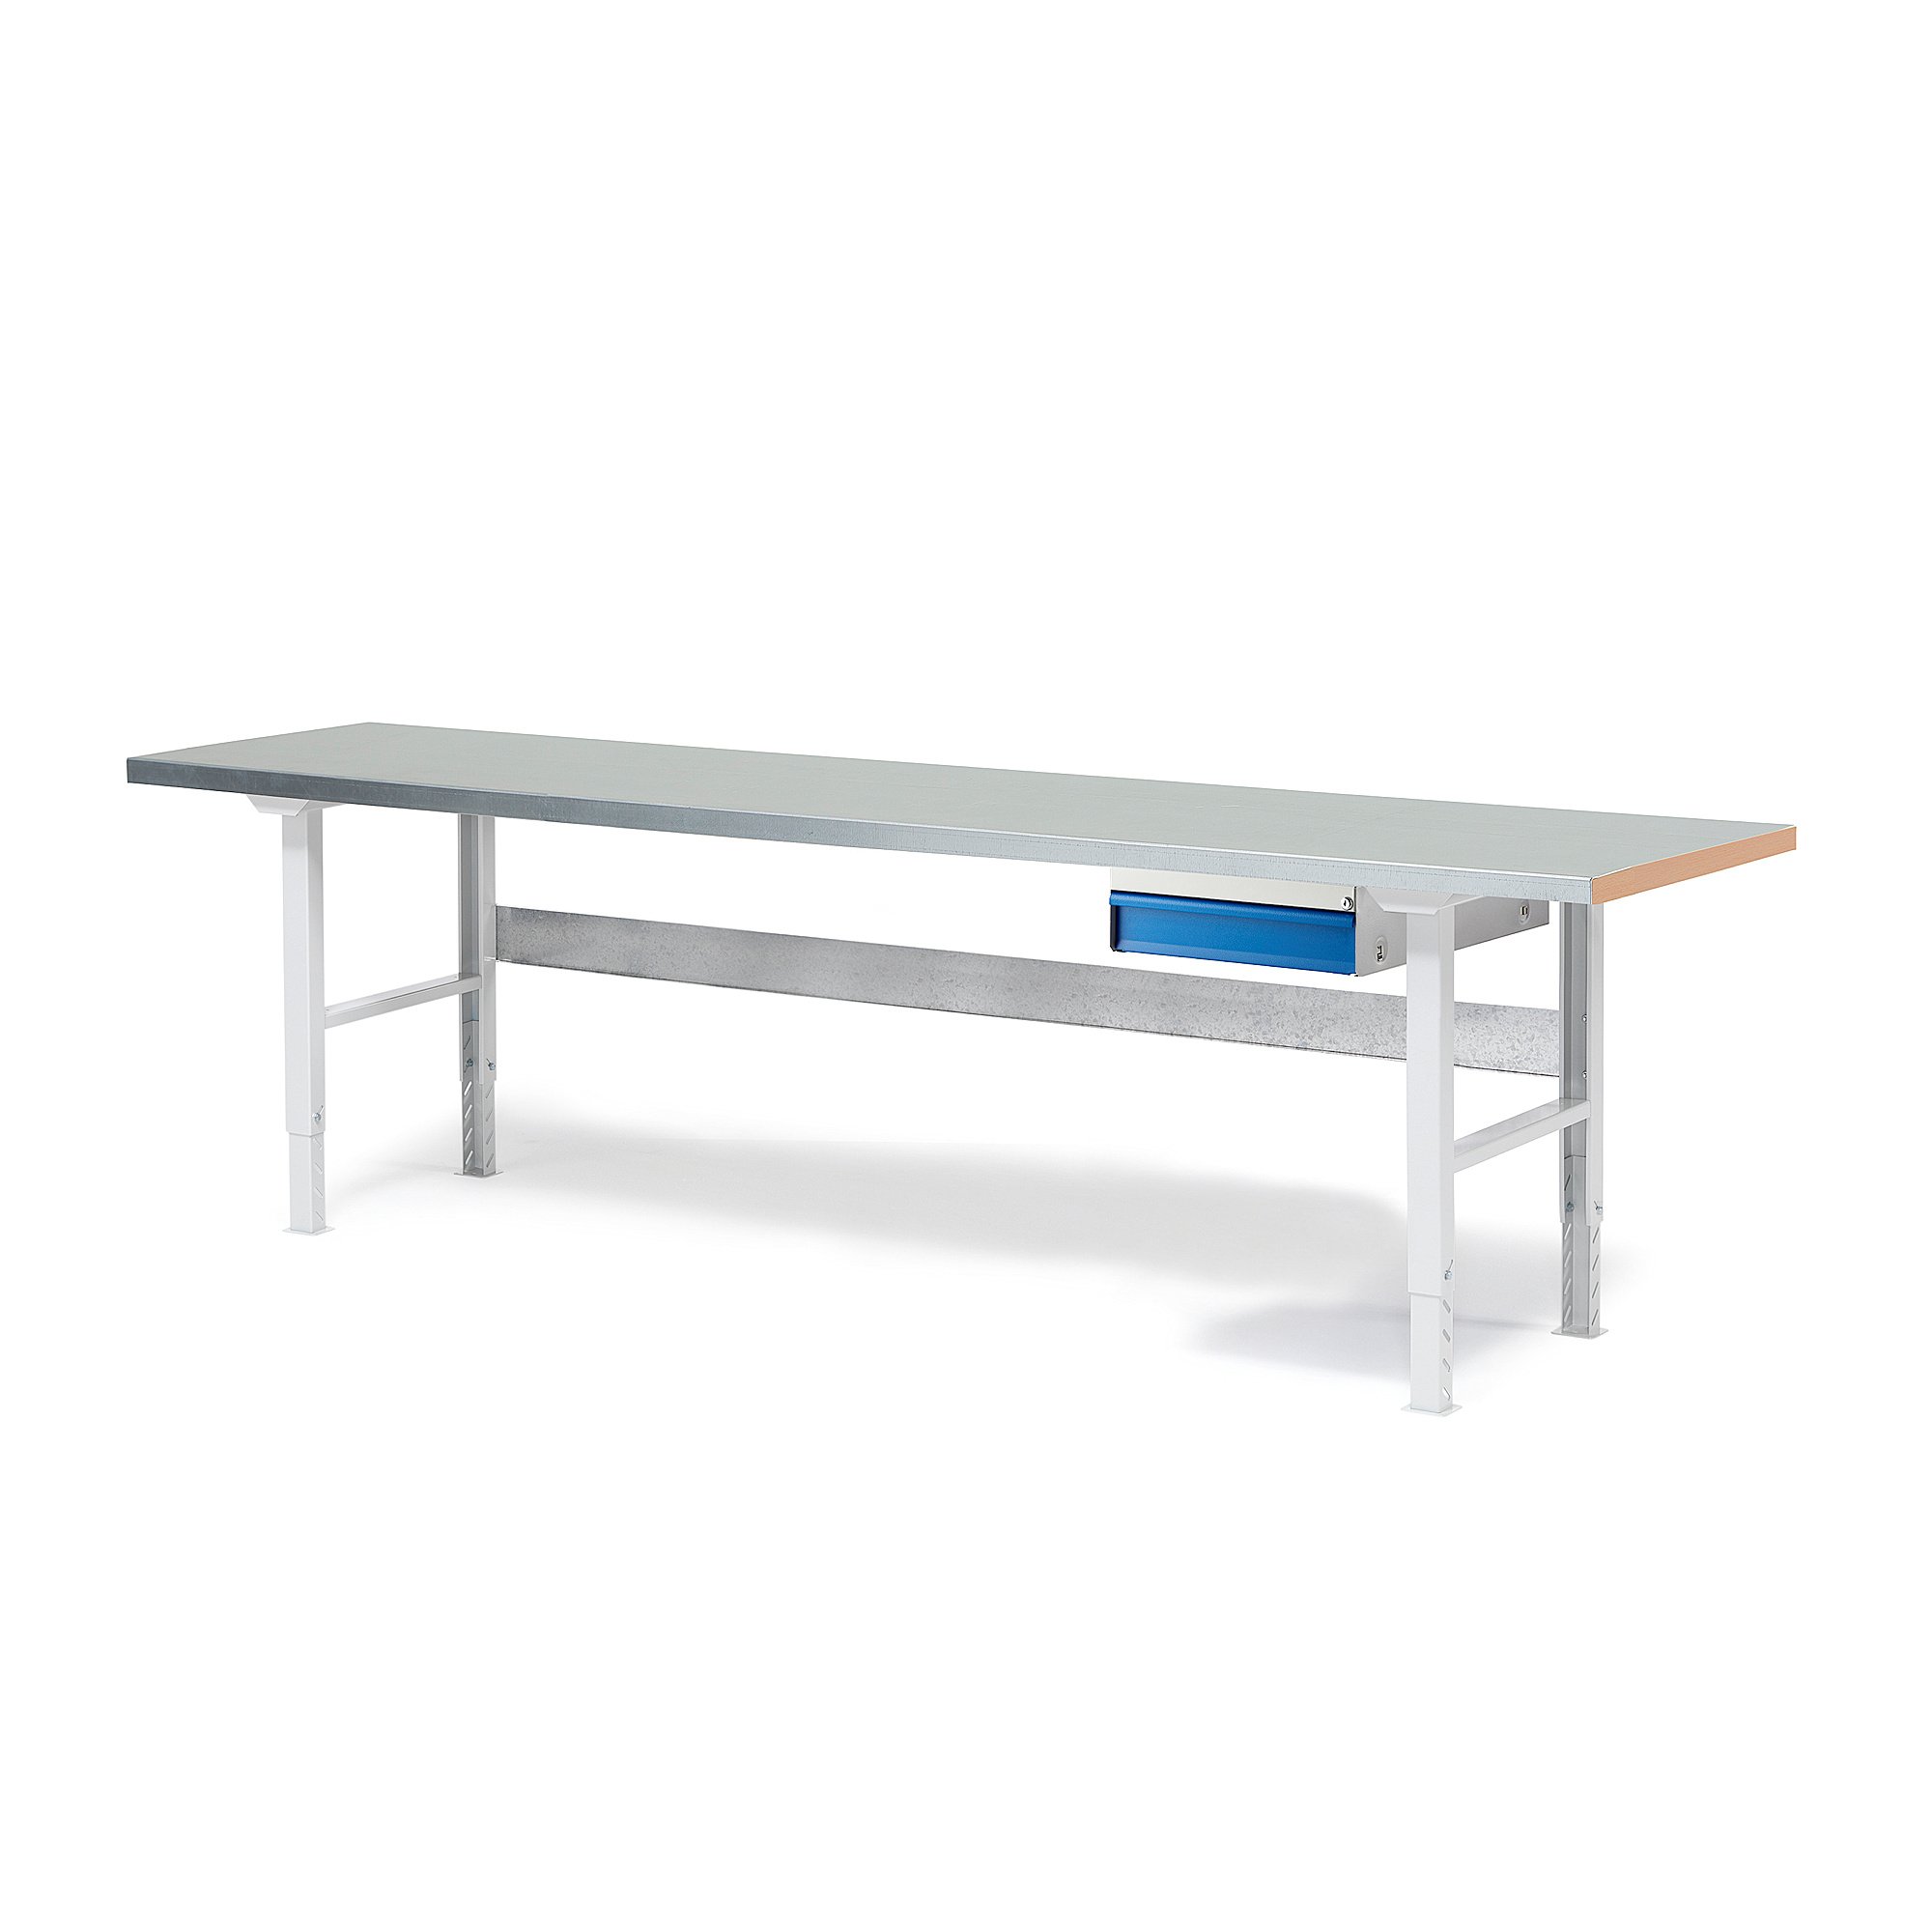 Dielenský stôl Solid so zásuvkou, nosnosť 750 kg, 2500x800 mm, oceľ